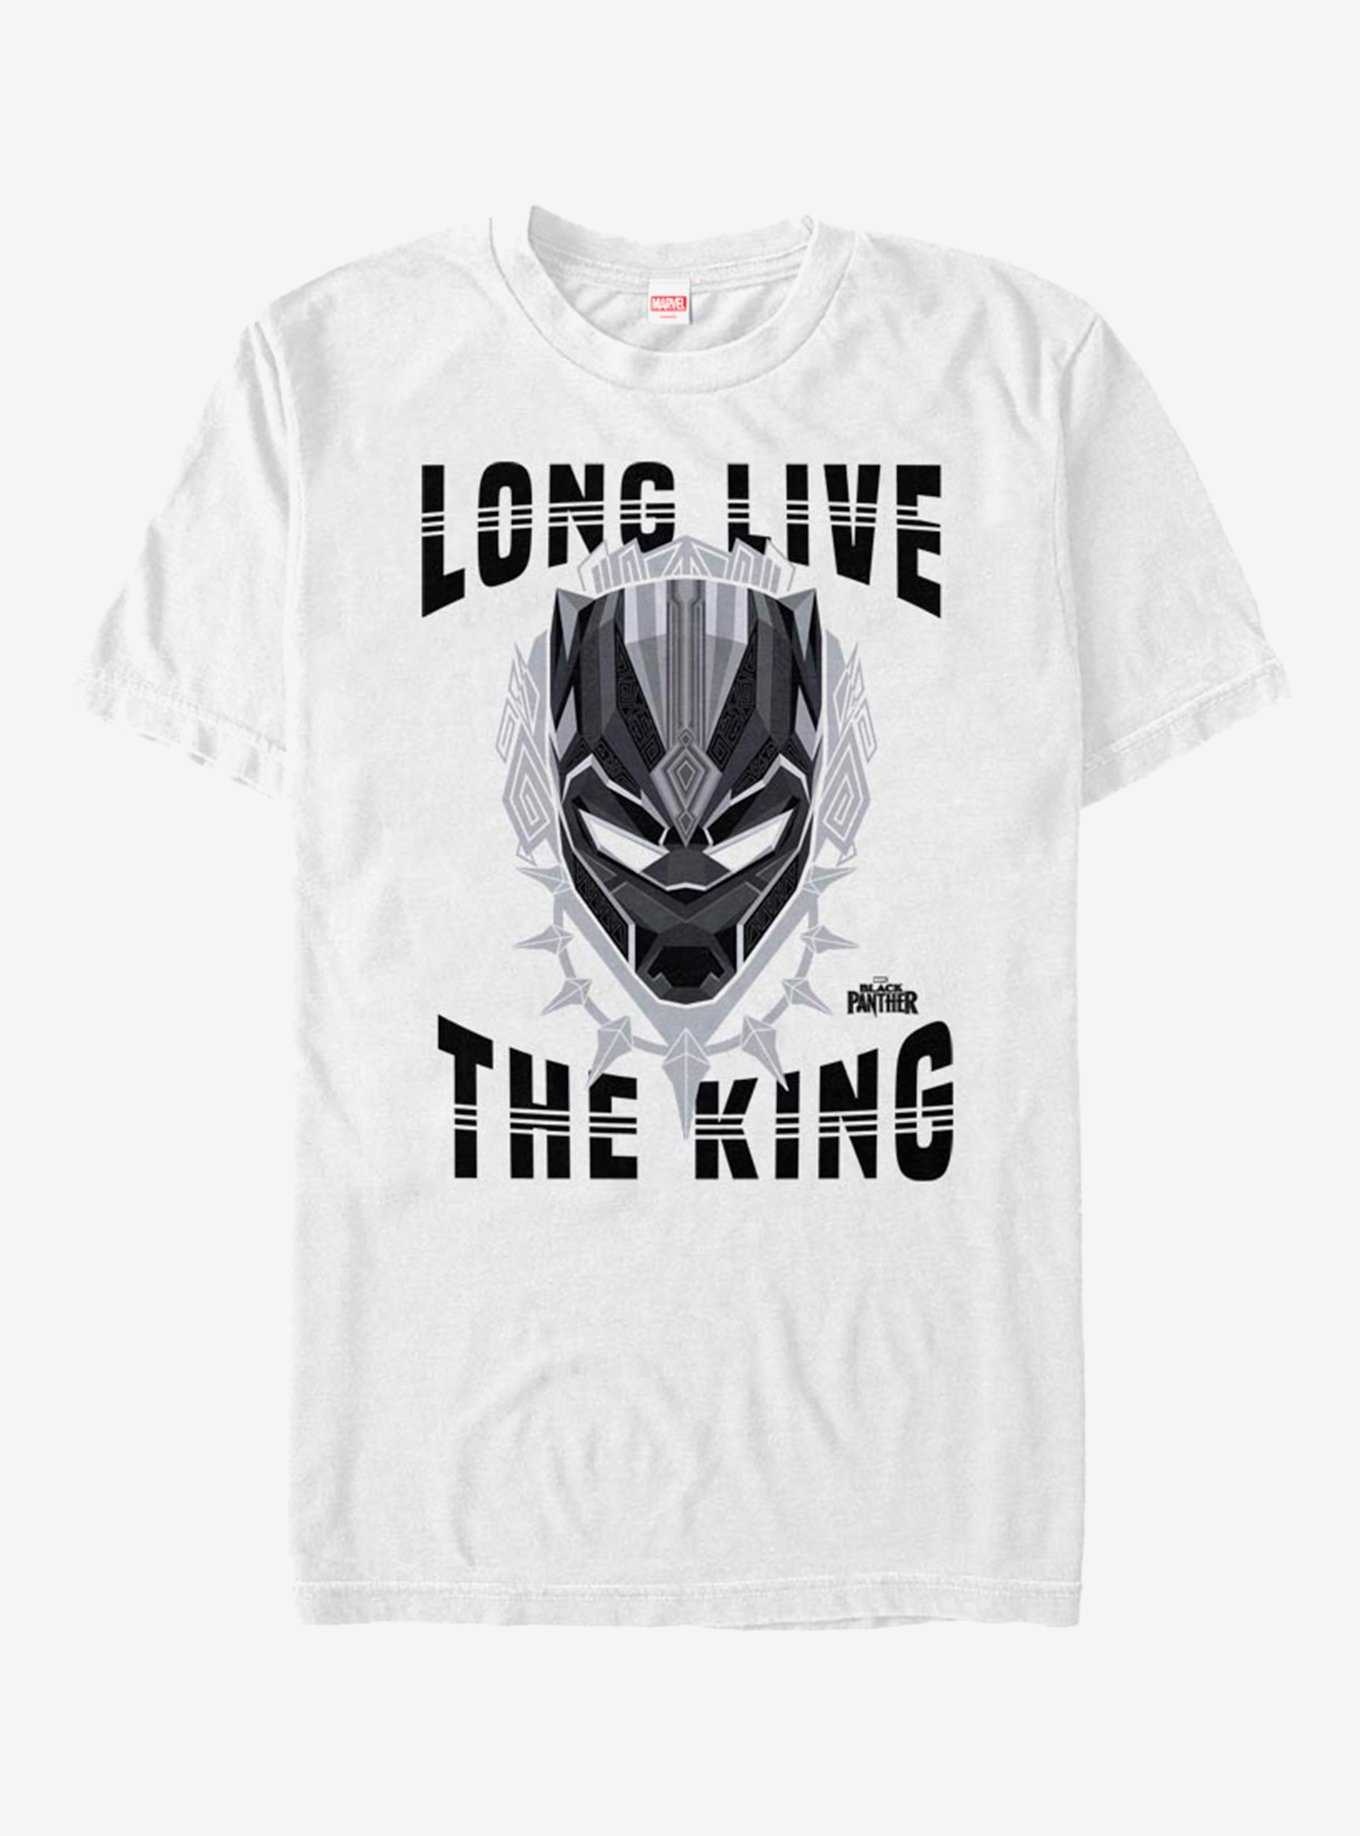 Marvel Black Panther Long Live T-Shirt, , hi-res